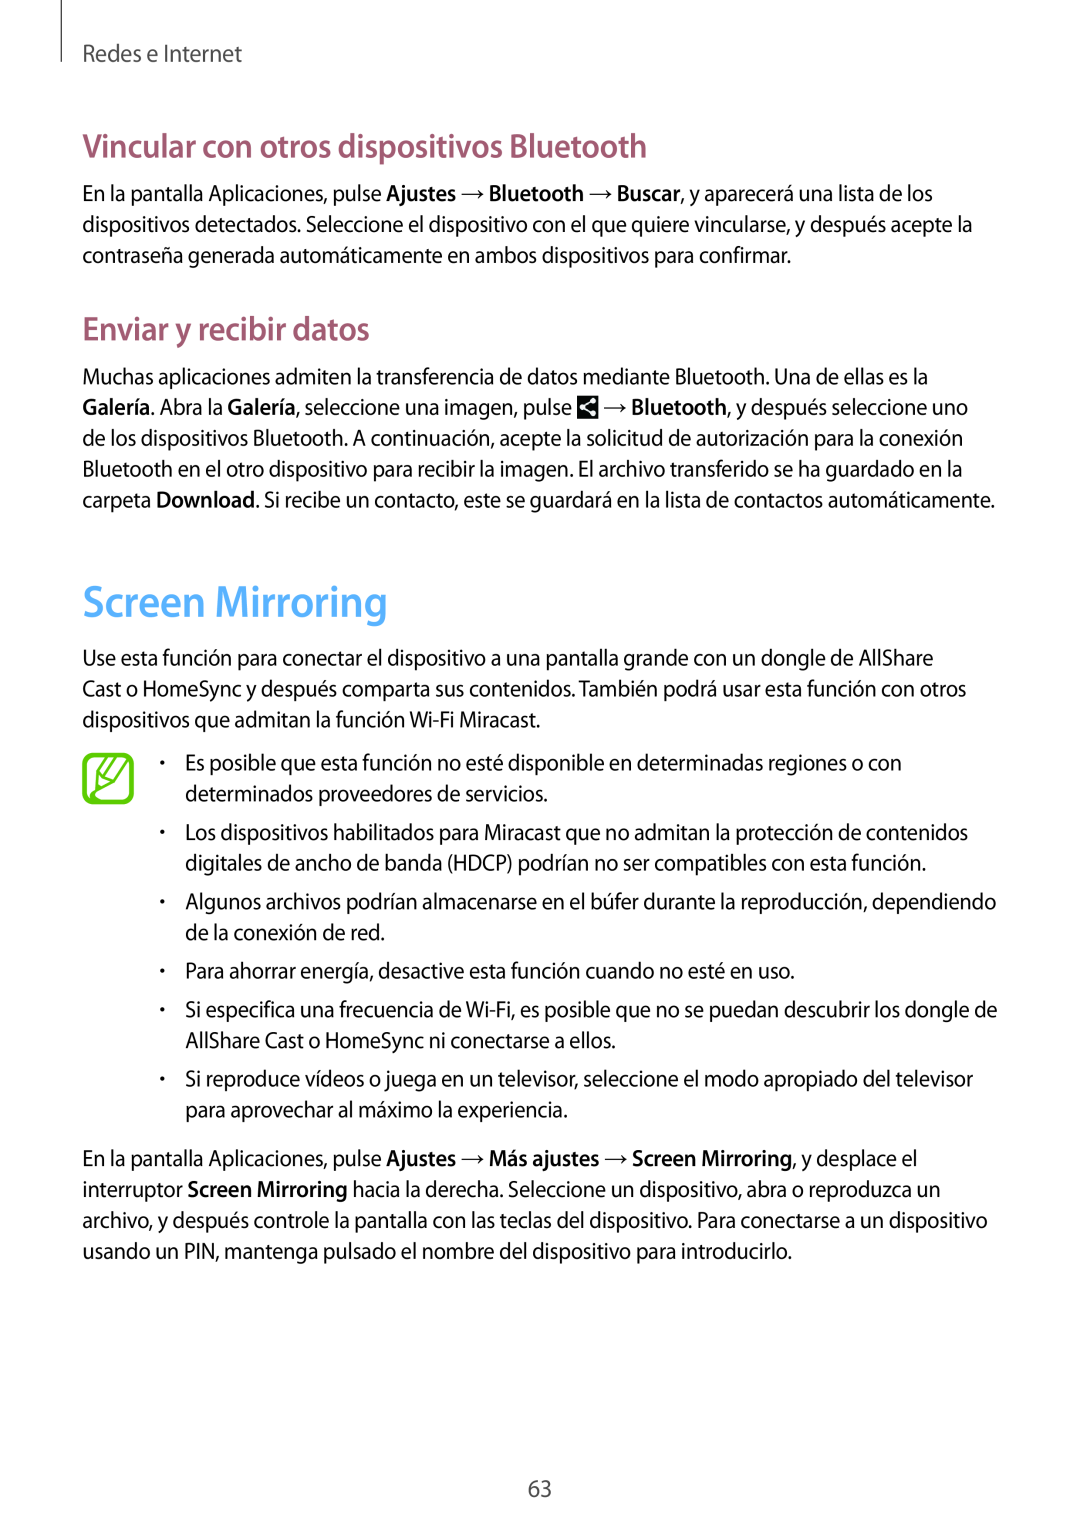 Samsung SM-T3150ZWAATL manual Screen Mirroring, Vincular con otros dispositivos Bluetooth, Enviar y recibir datos 